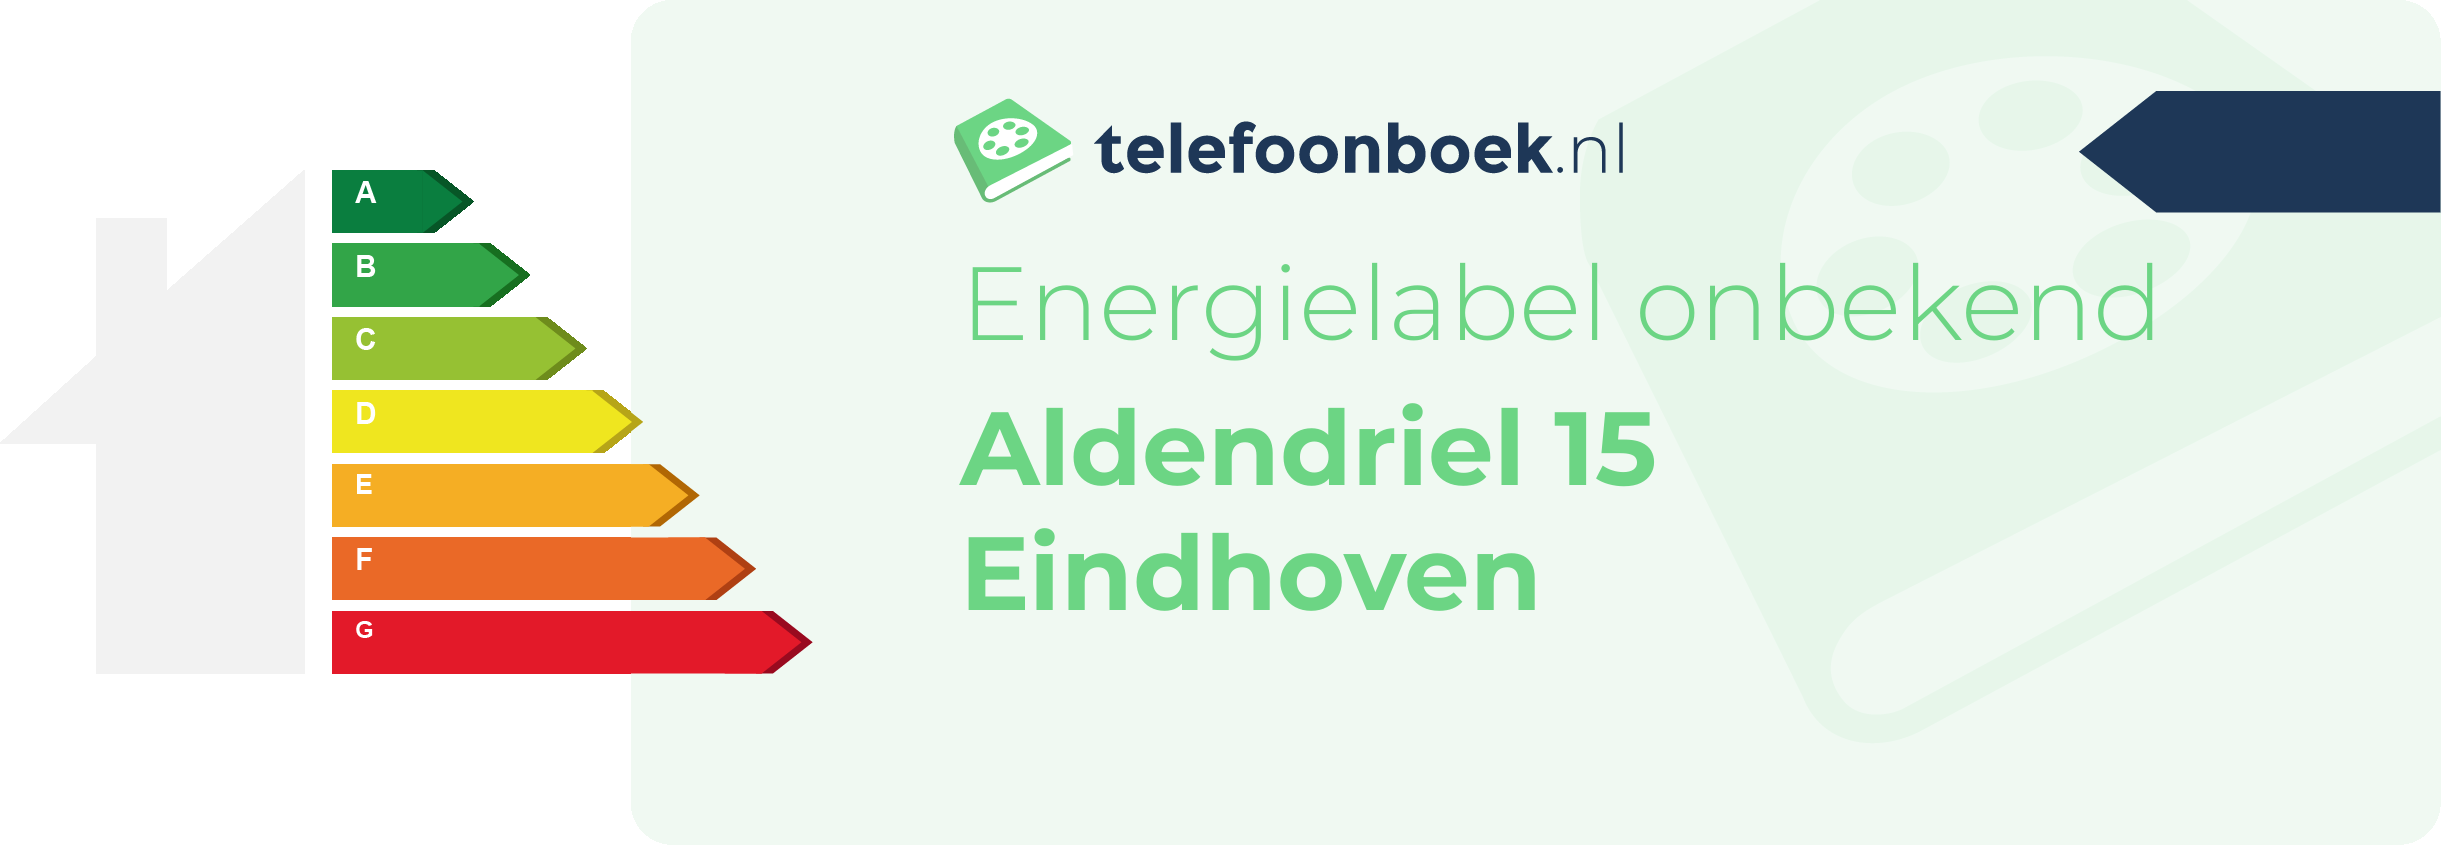 Energielabel Aldendriel 15 Eindhoven